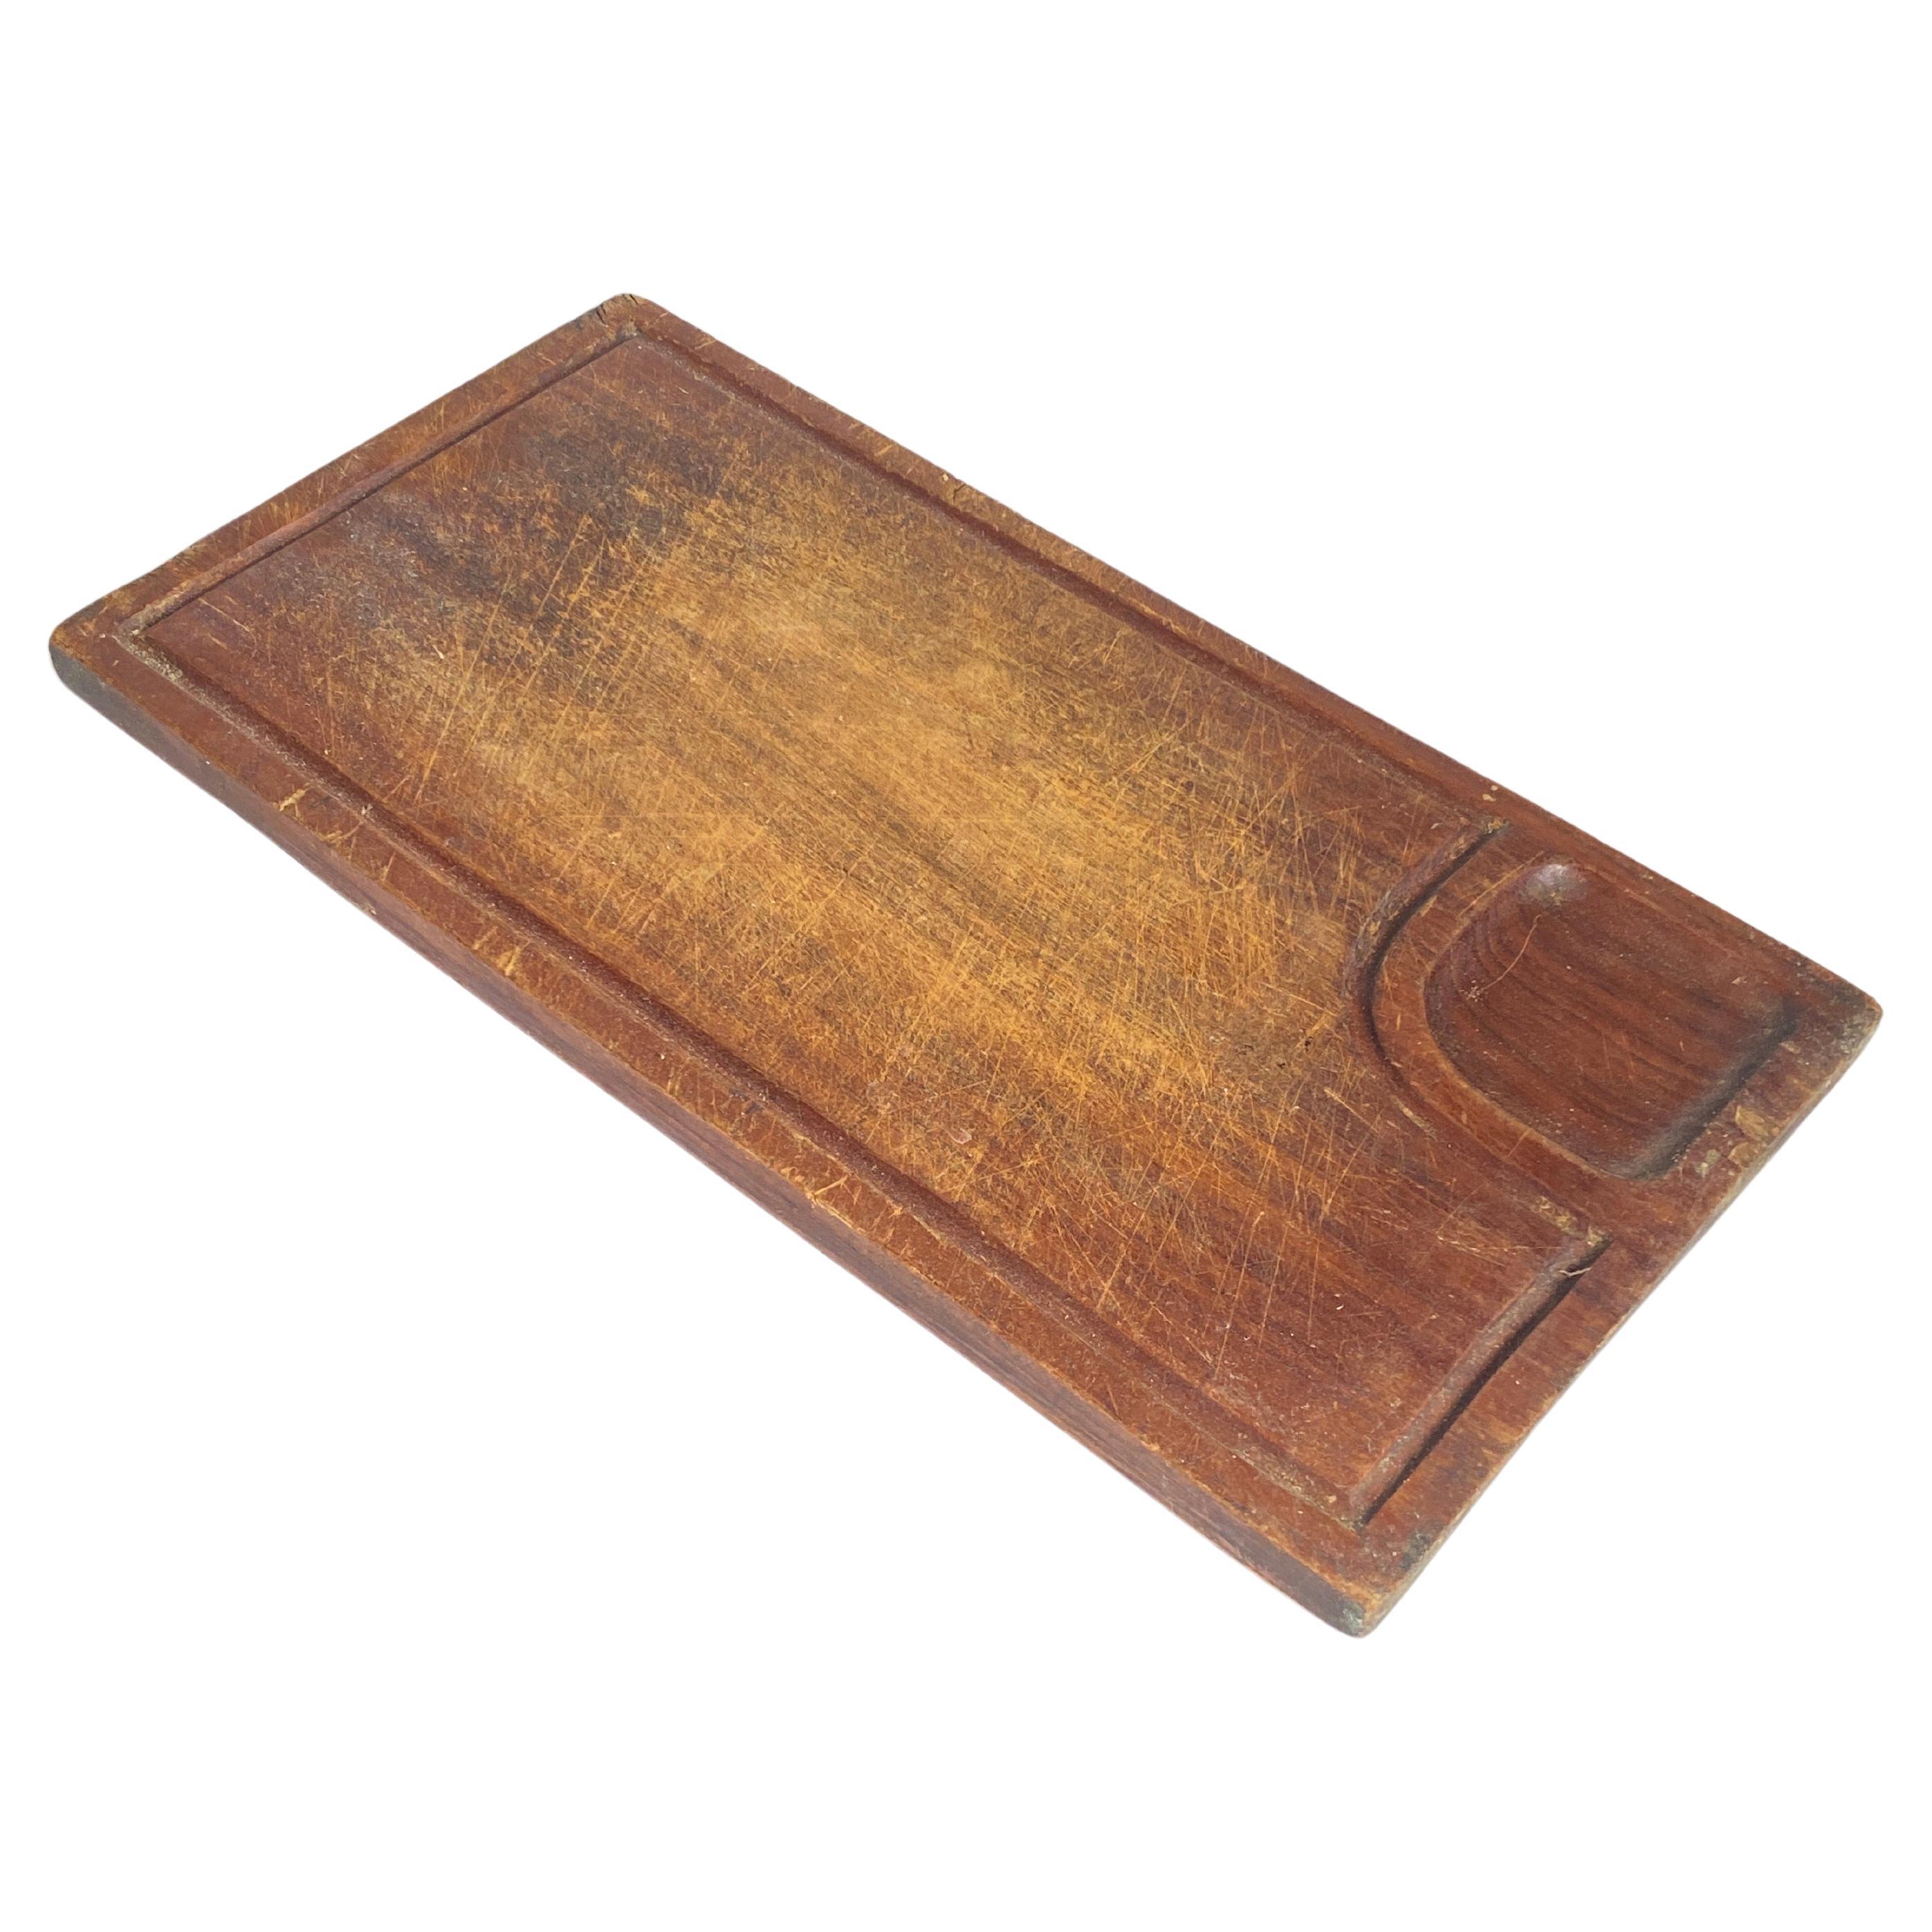  Planche à découper ou à découper en bois, patine ancienne, couleur marron, France, XXe siècle